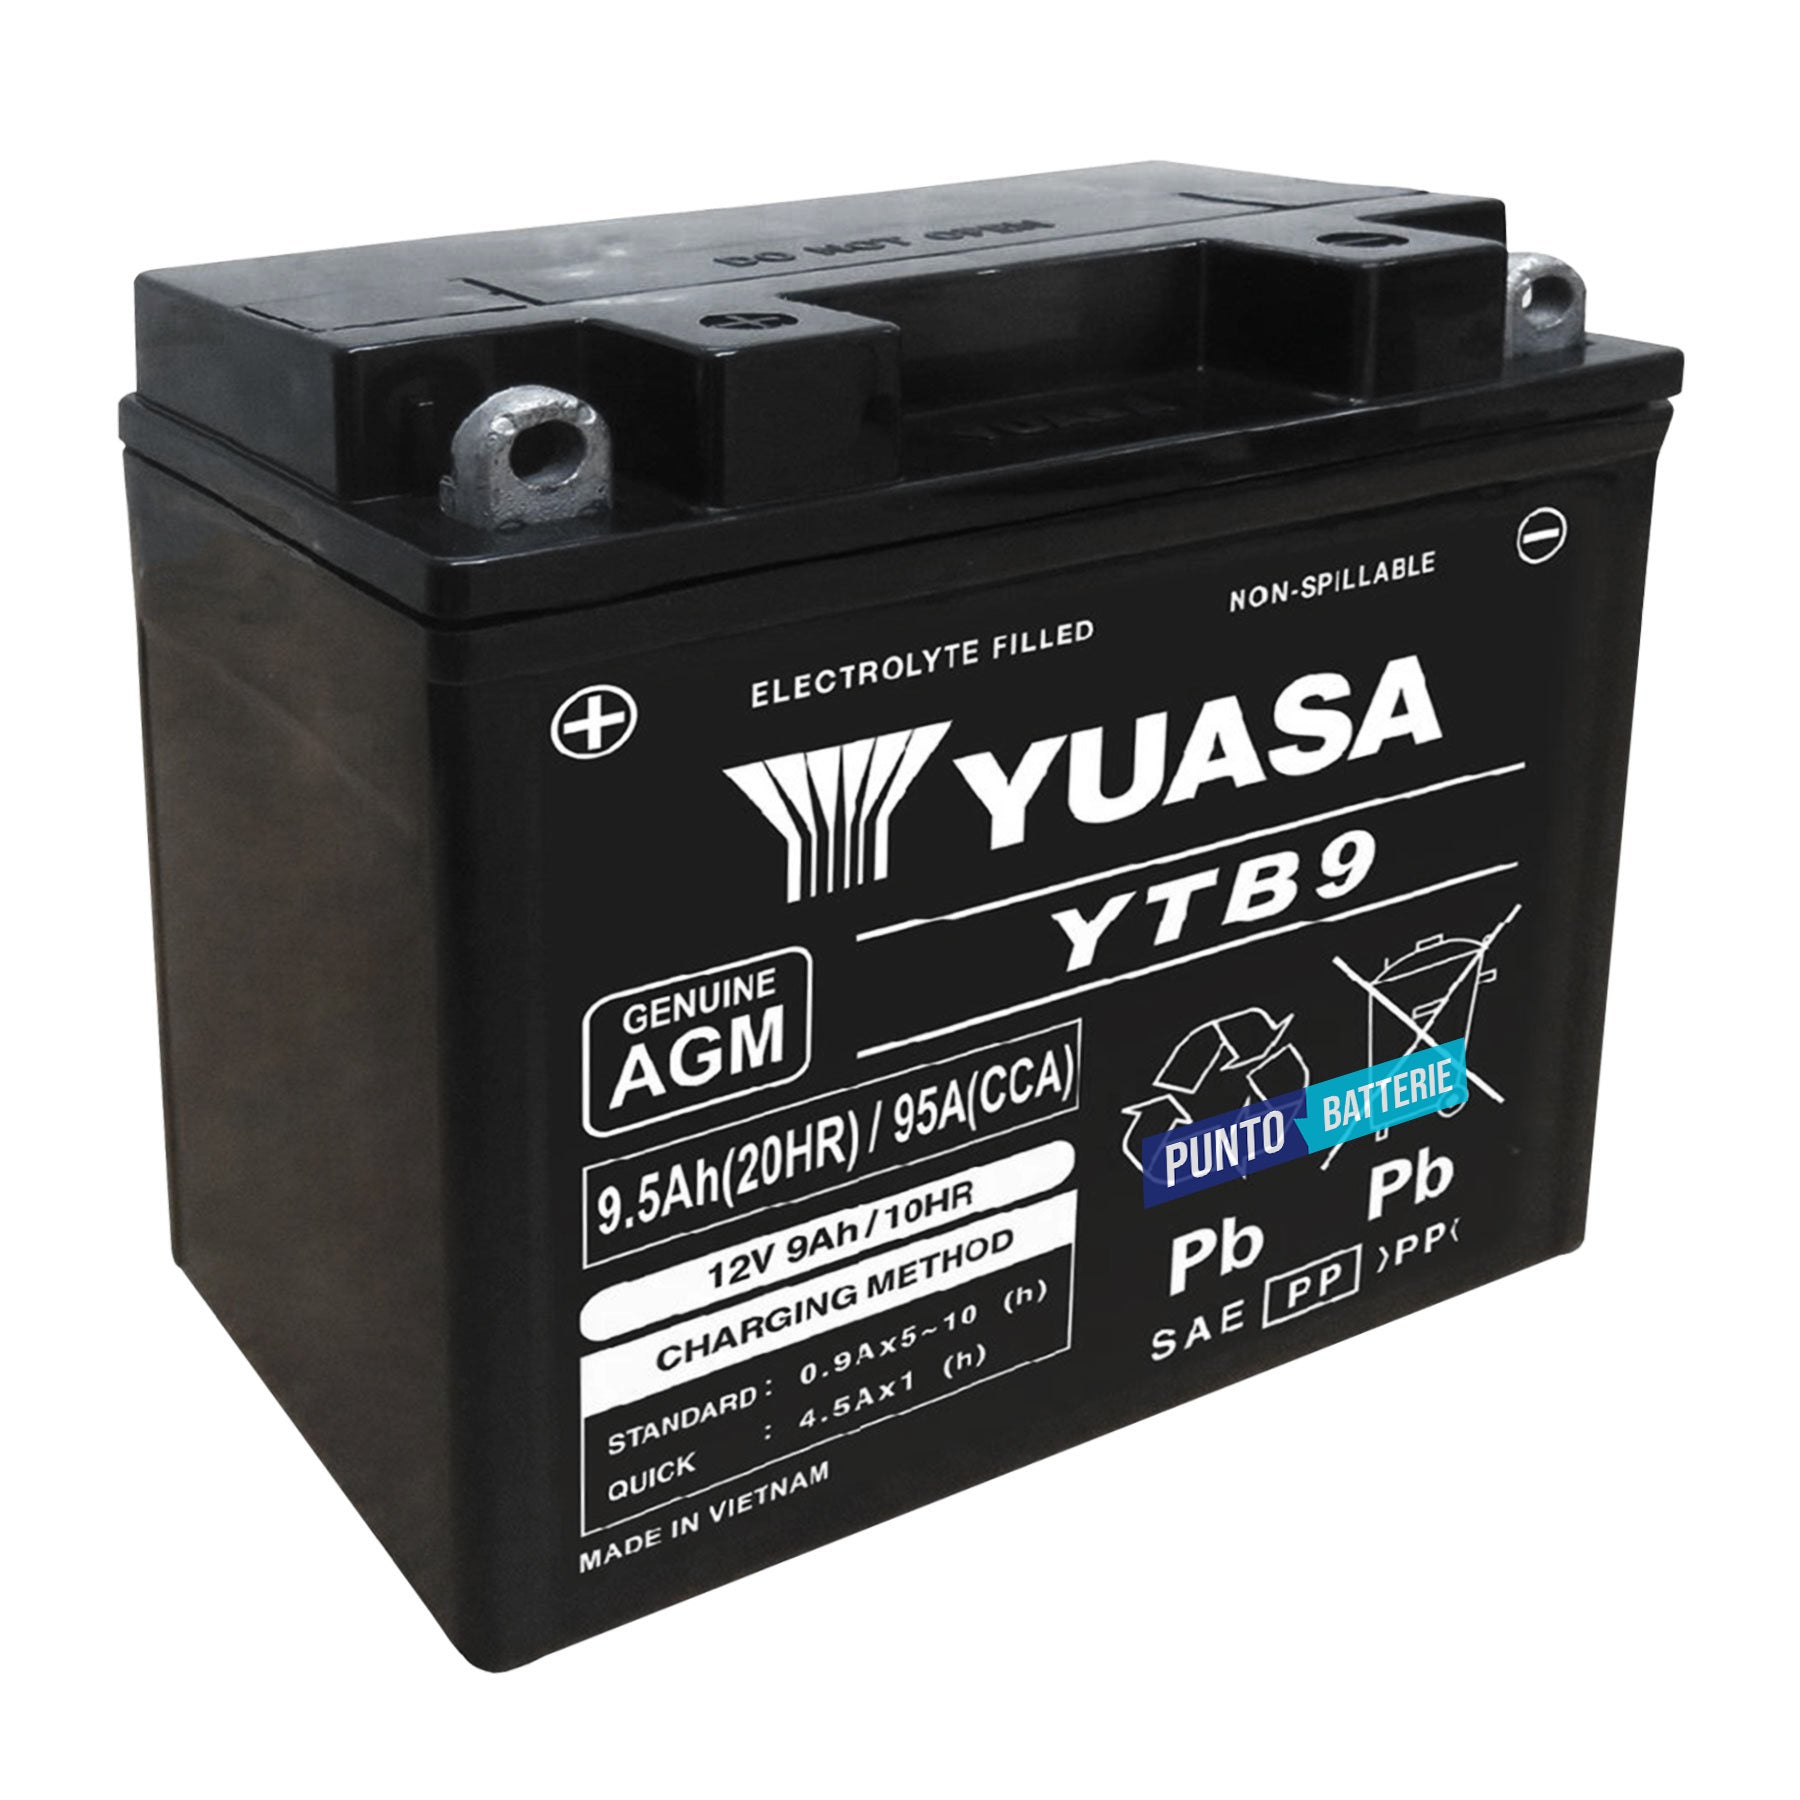 Batteria originale Yuasa YTB YTB9, dimensioni 135 x 75 x 140, polo positivo a sinistra, 12 volt, 9 amperora, 95 ampere. Batteria per moto, scooter e powersport.